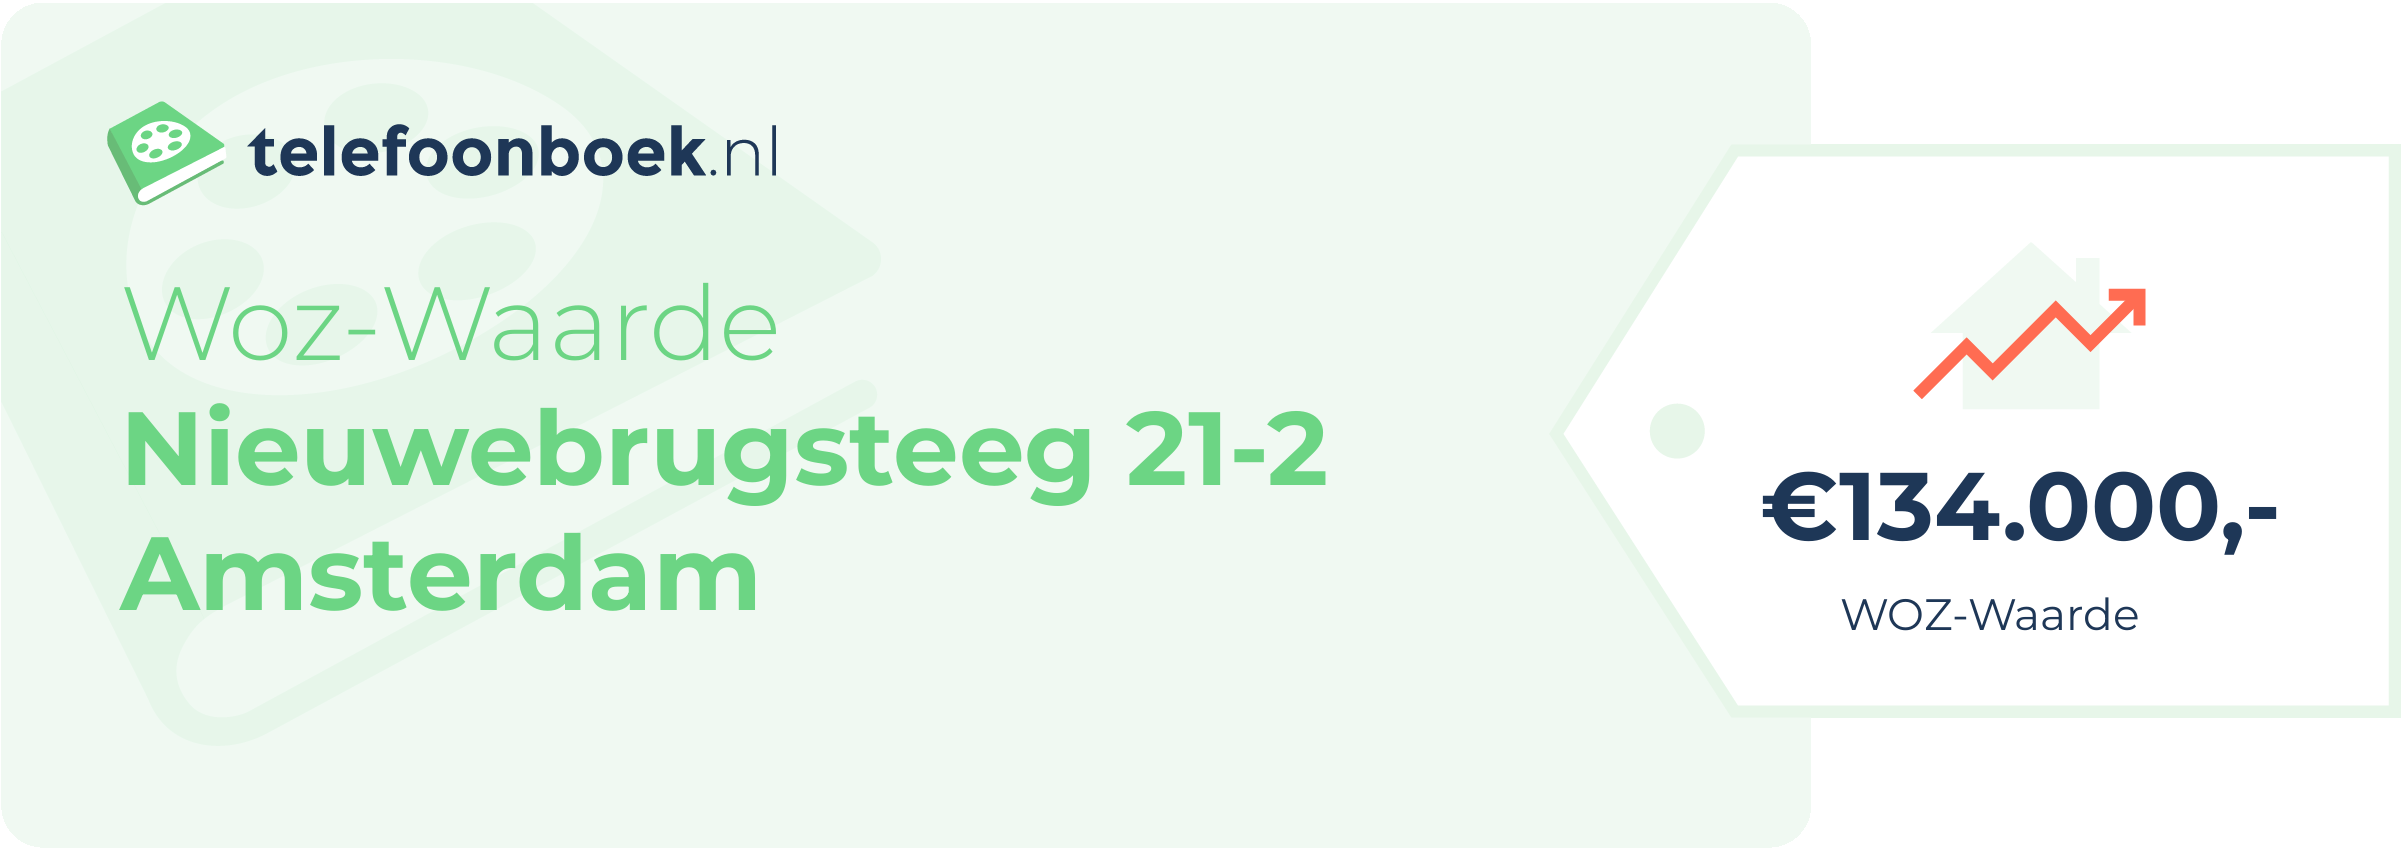 WOZ-waarde Nieuwebrugsteeg 21-2 Amsterdam